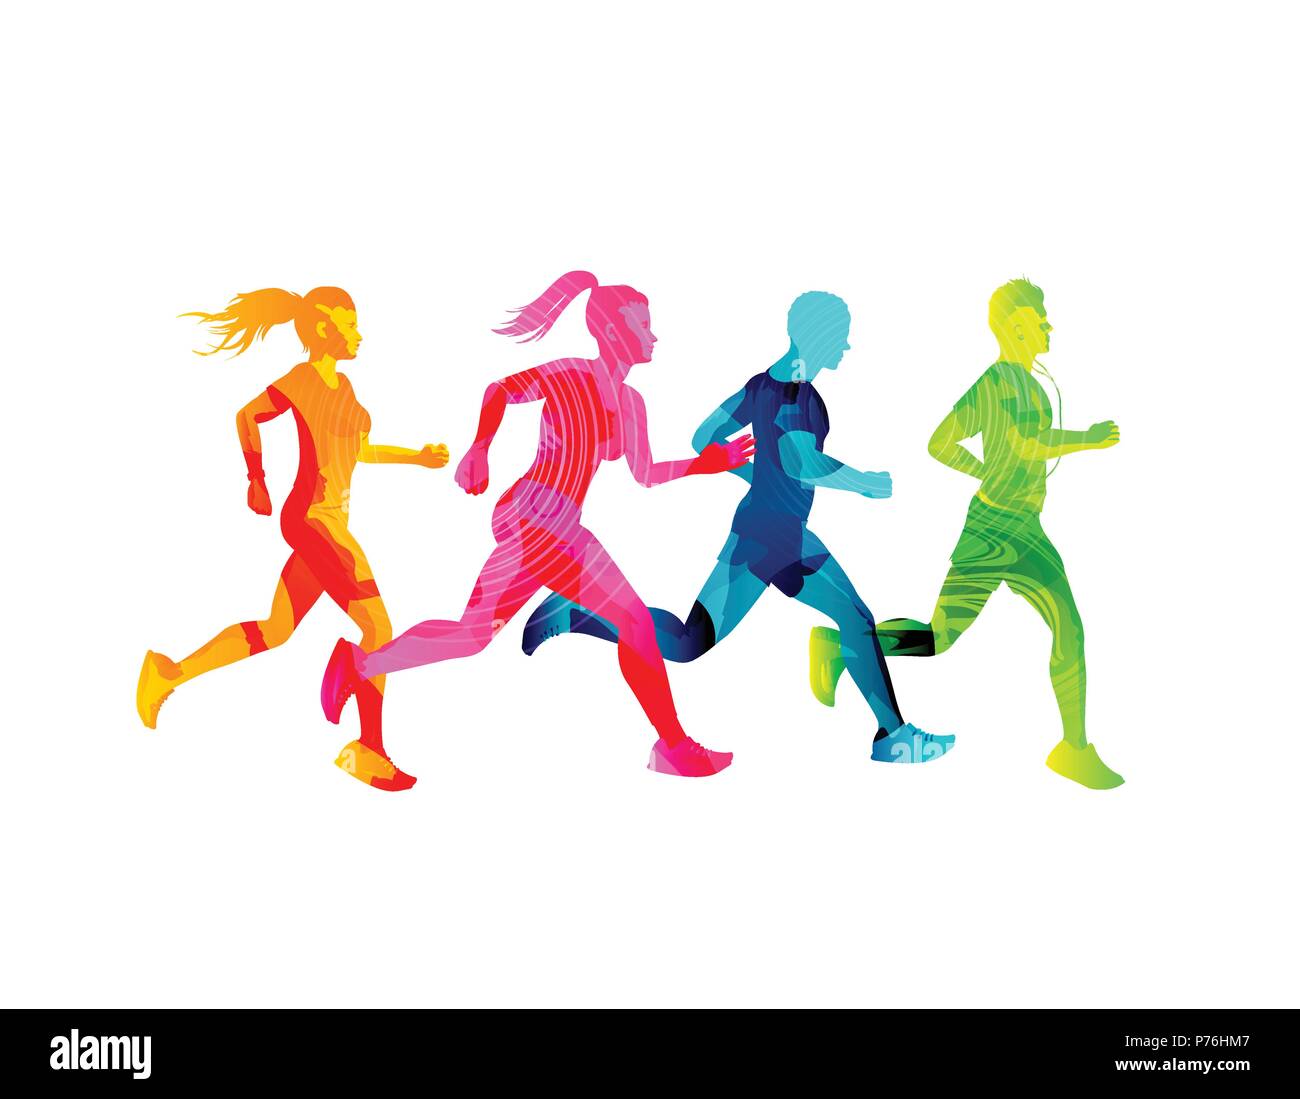 Un groupe d'hommes et femmes se tenir en forme. La texture colorée de personnes silhouettes. Vector illustration. Illustration de Vecteur